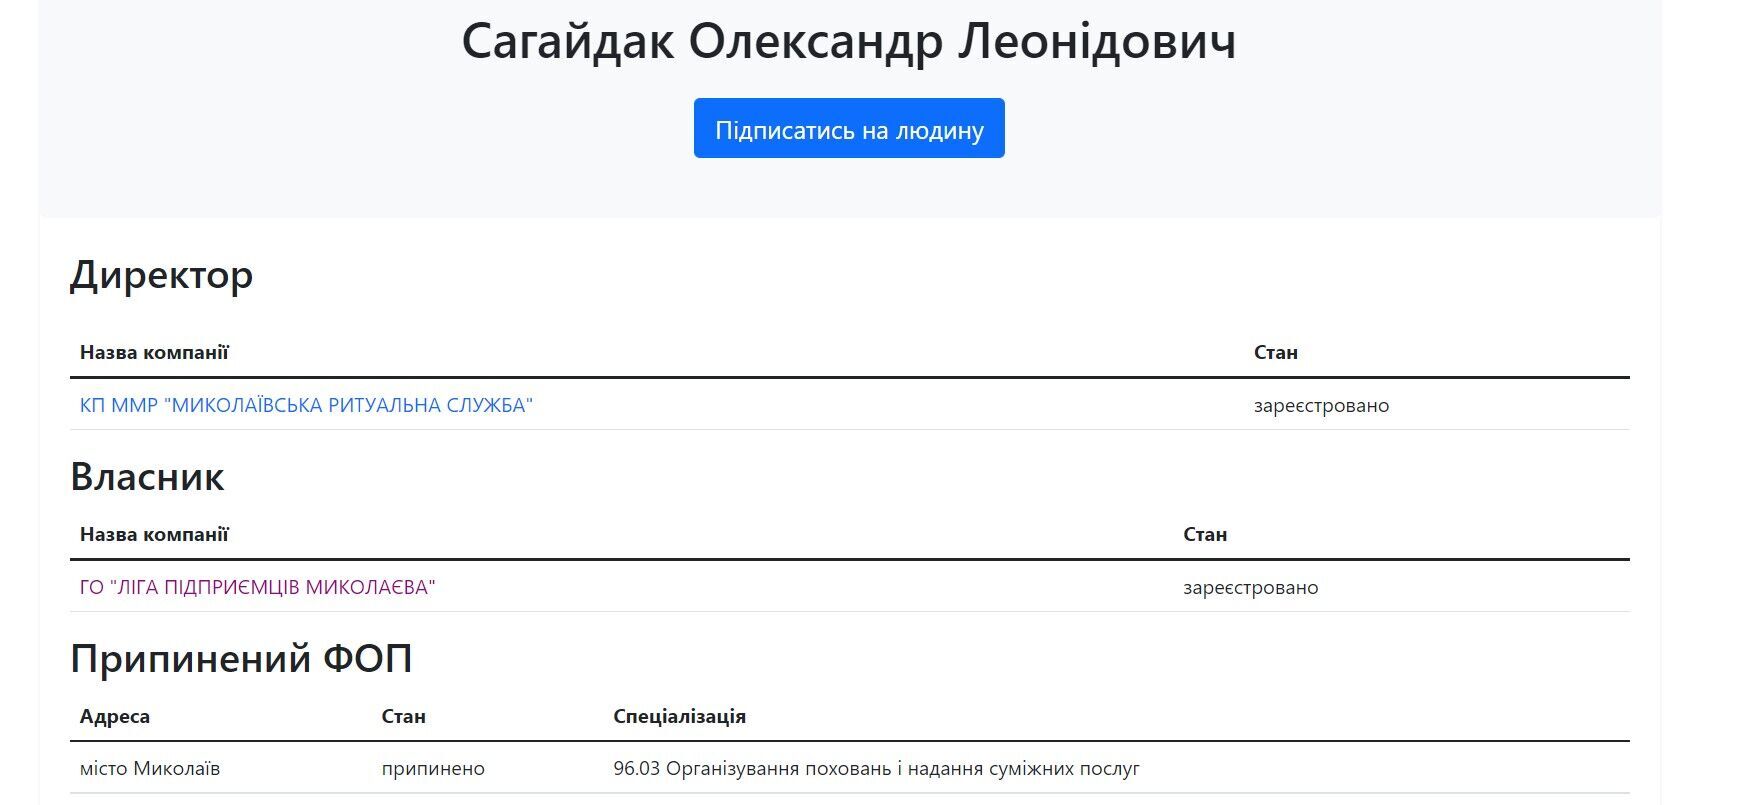 opendatabot – дані про Сергія Сагайдака з Миколаєва